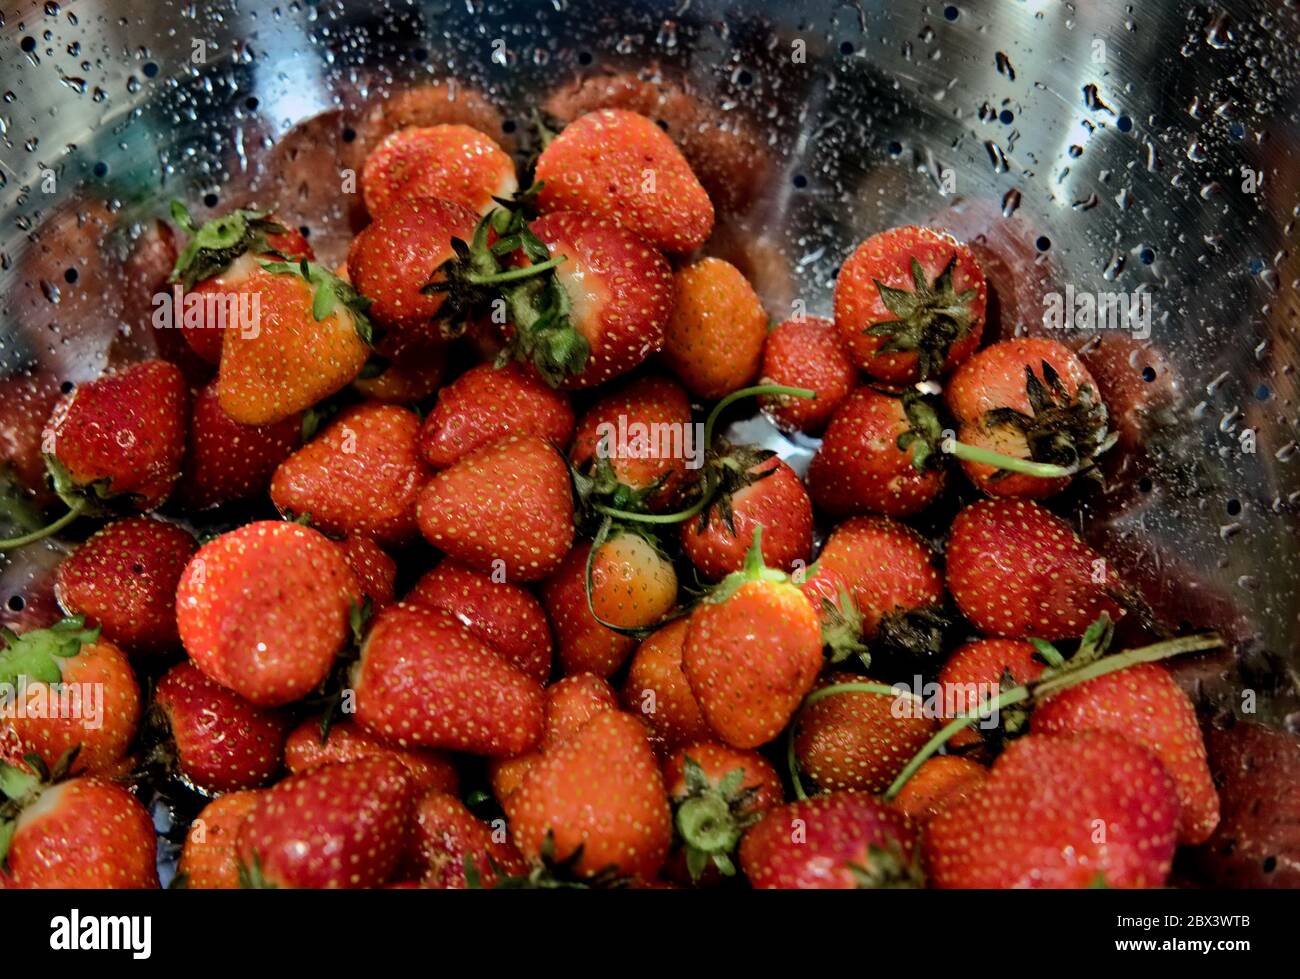 Frische Erdbeeren aus der lokalen CSA (Community Supported Agriculture), die von einer lokalen Delaware Farm bereitgestellt werden. Stockfoto